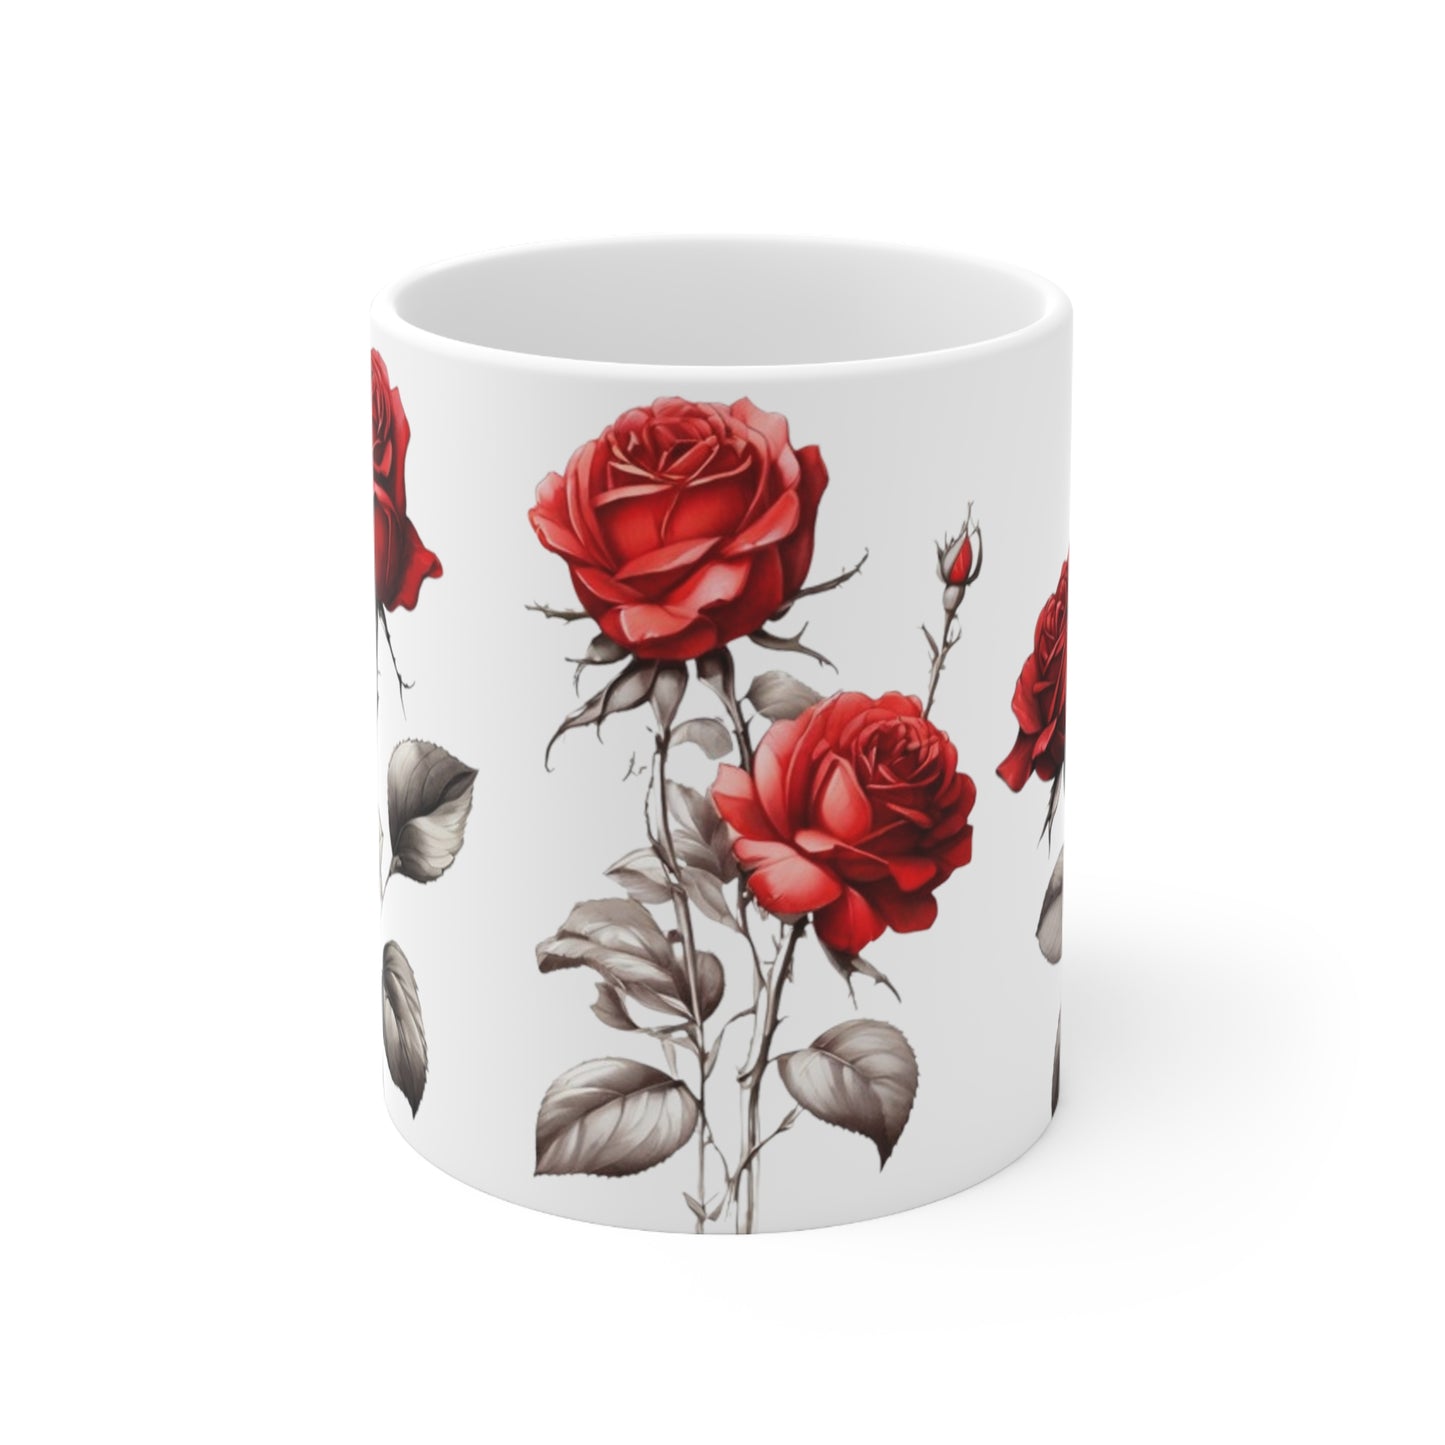 Sketch Art Red Roses Mug - Ceramic Coffee Mug 11oz